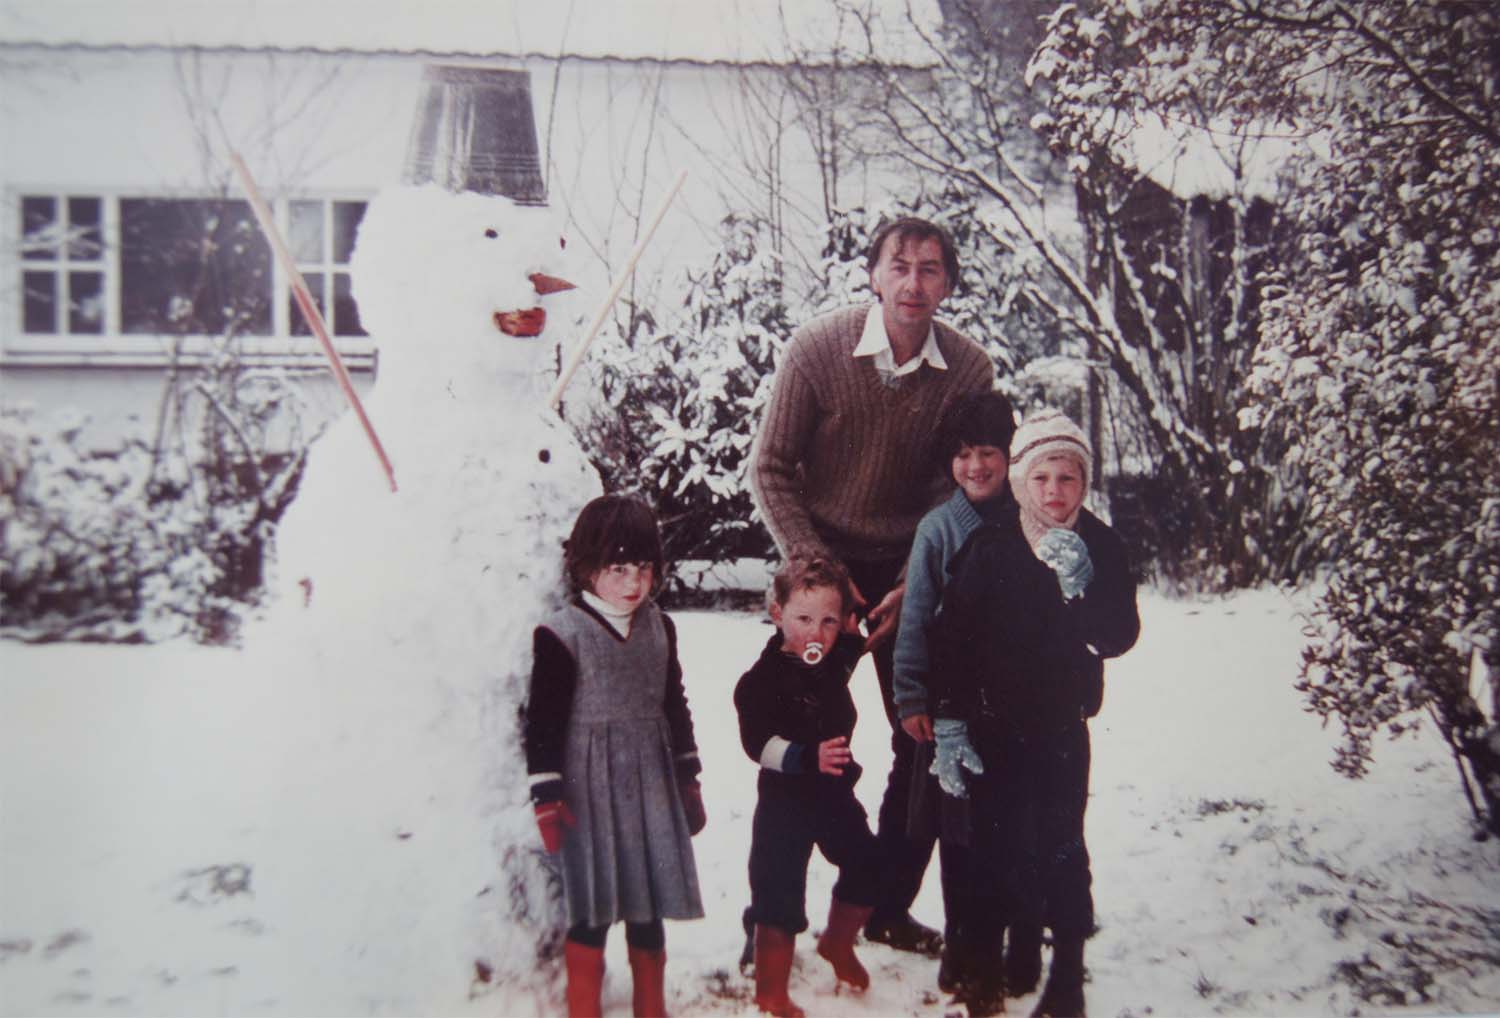 Geert met Sarah, Thomas, Bea, Hermes en sneeuwman